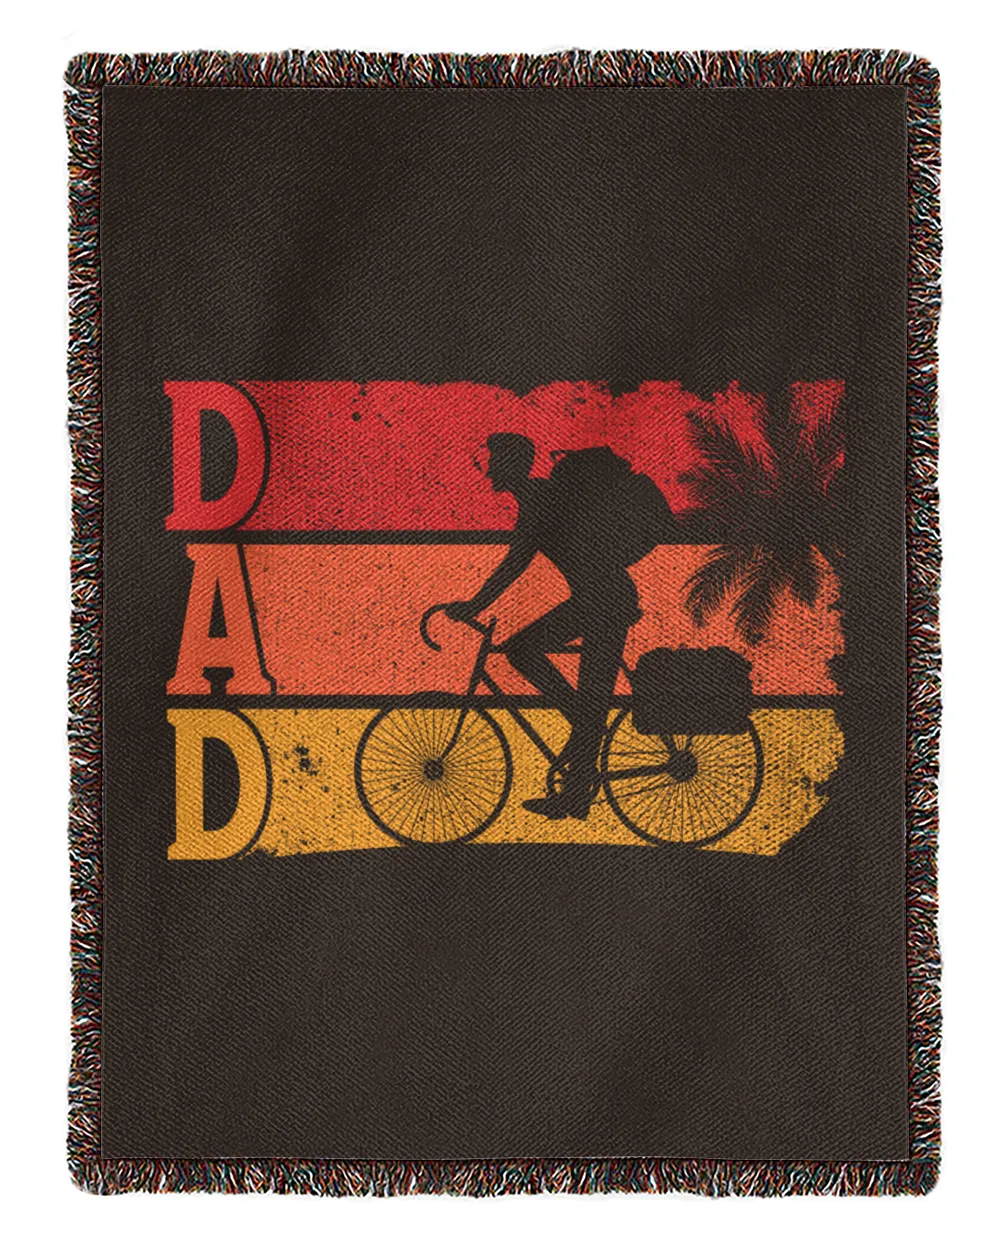 Cycling Dad